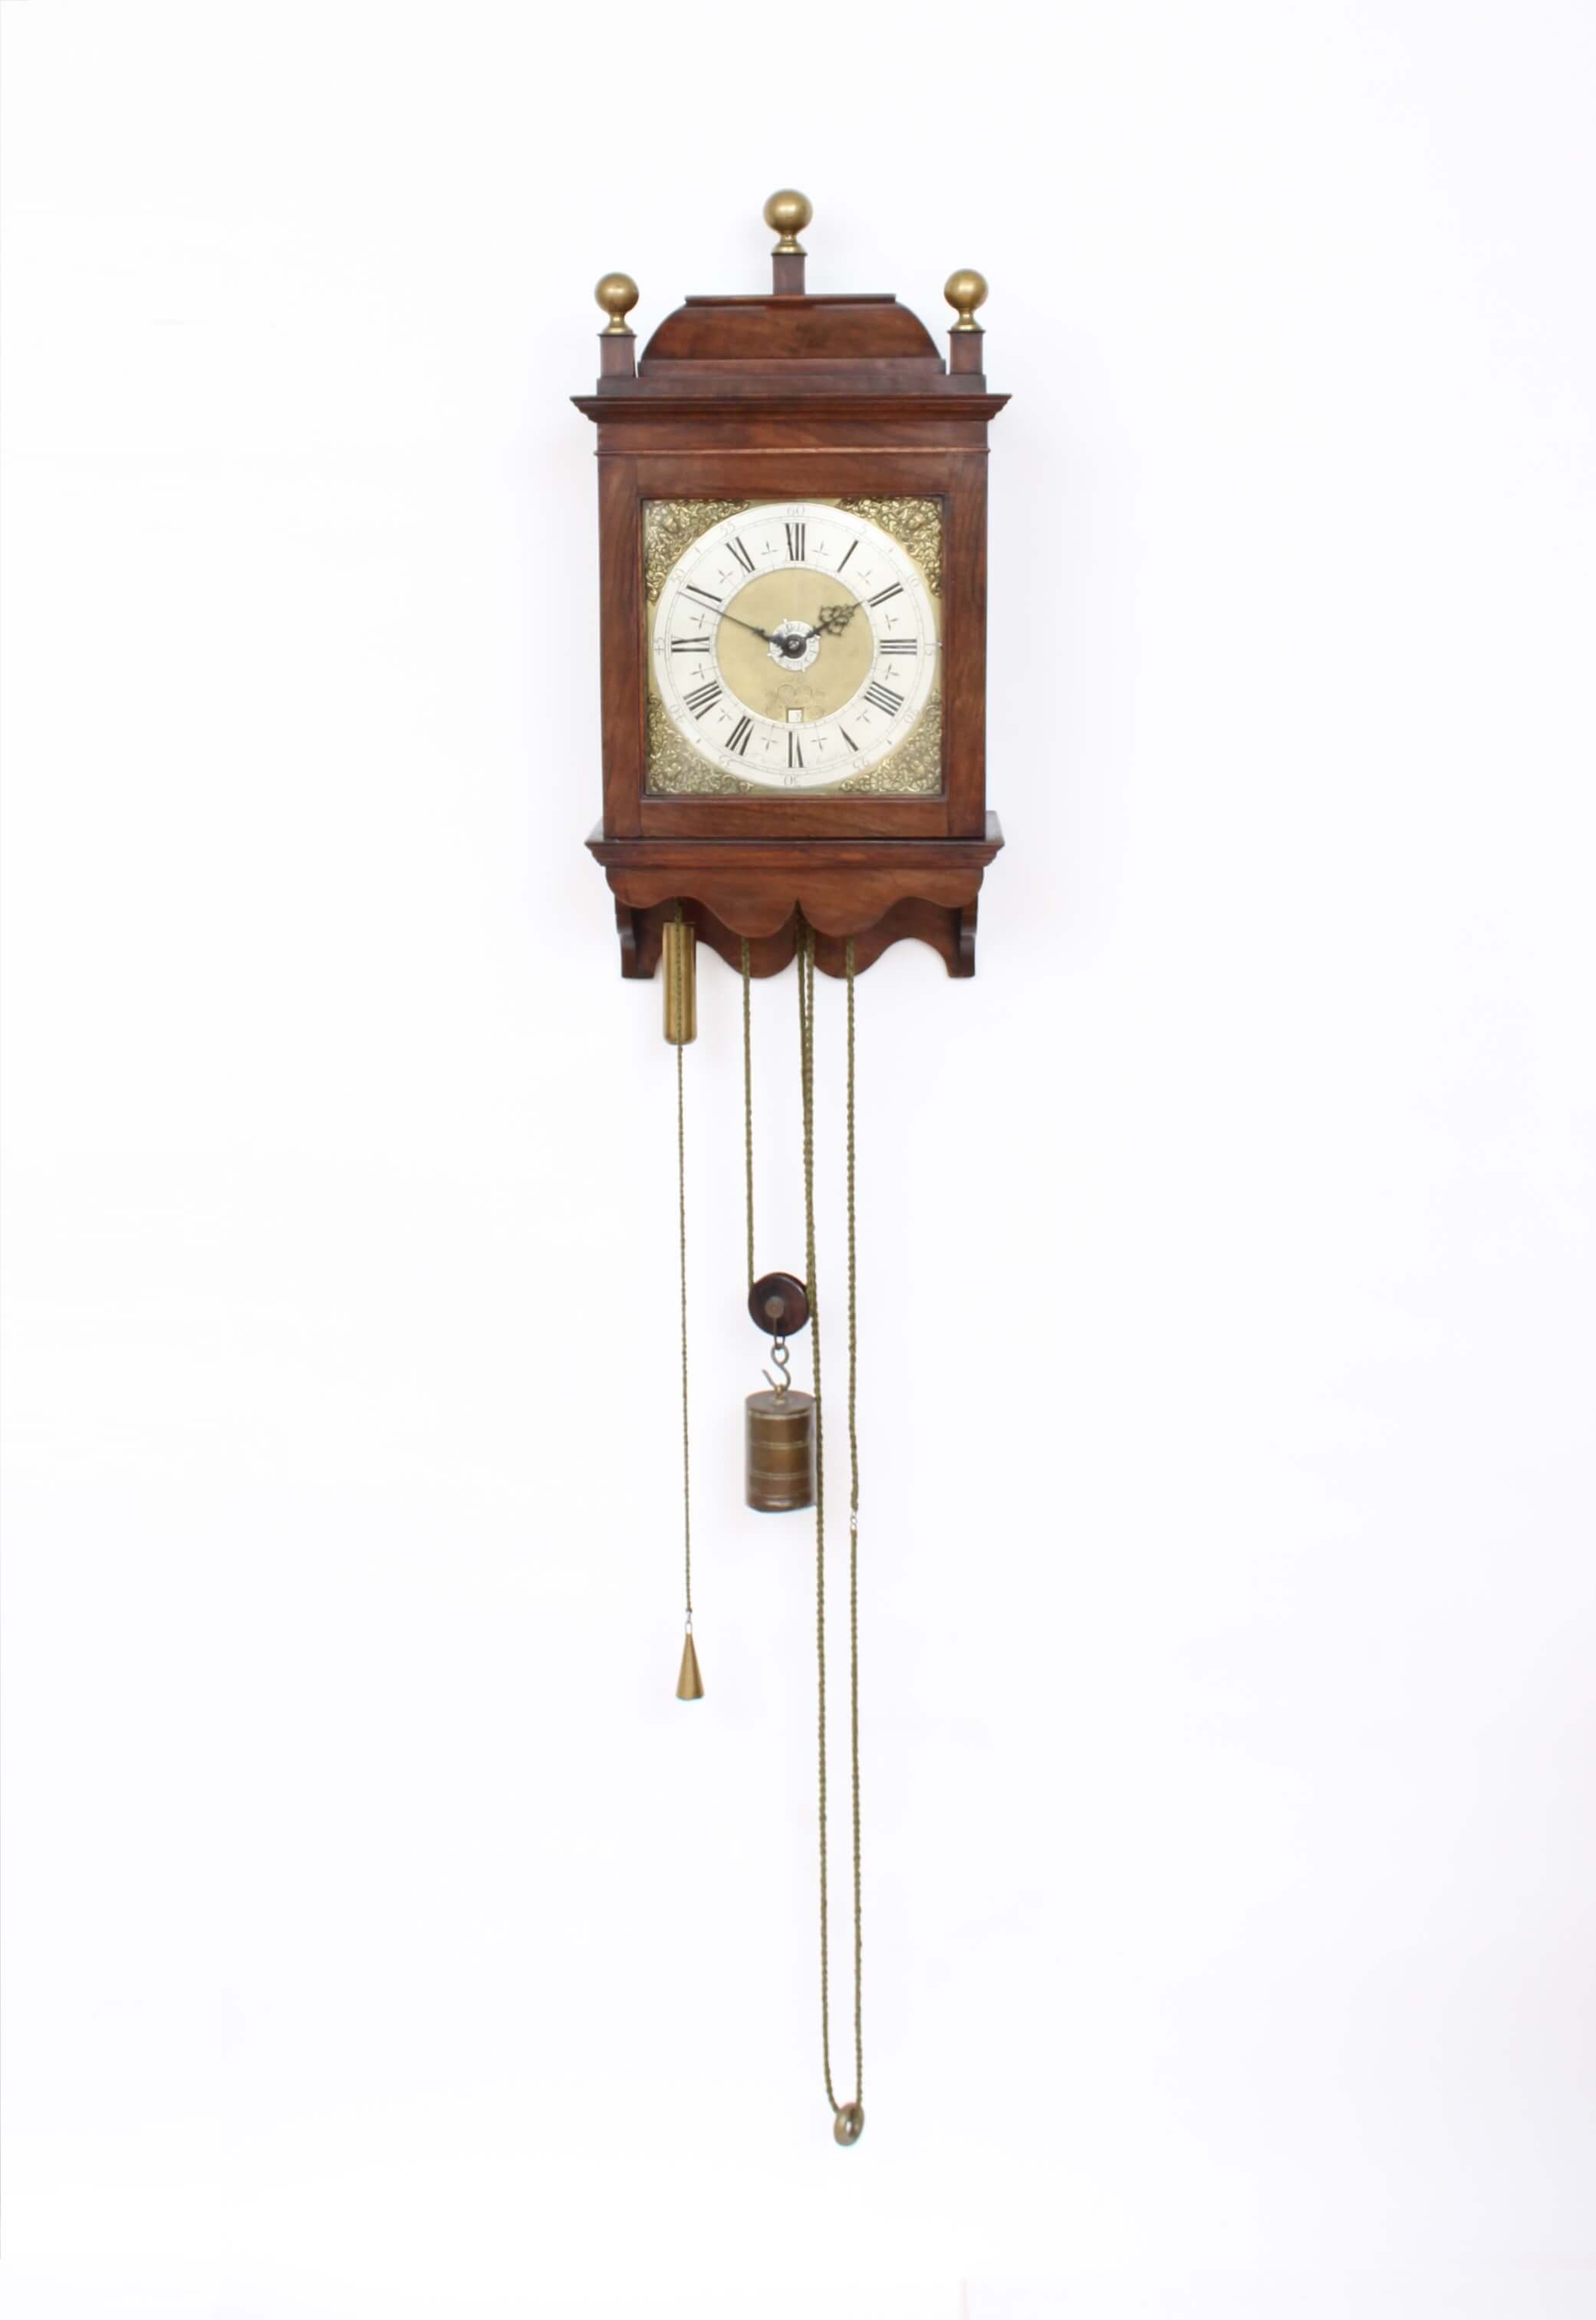 Dutch-Amsterdam-antique-wall-clock-Hasius-striking-alarm-walnut